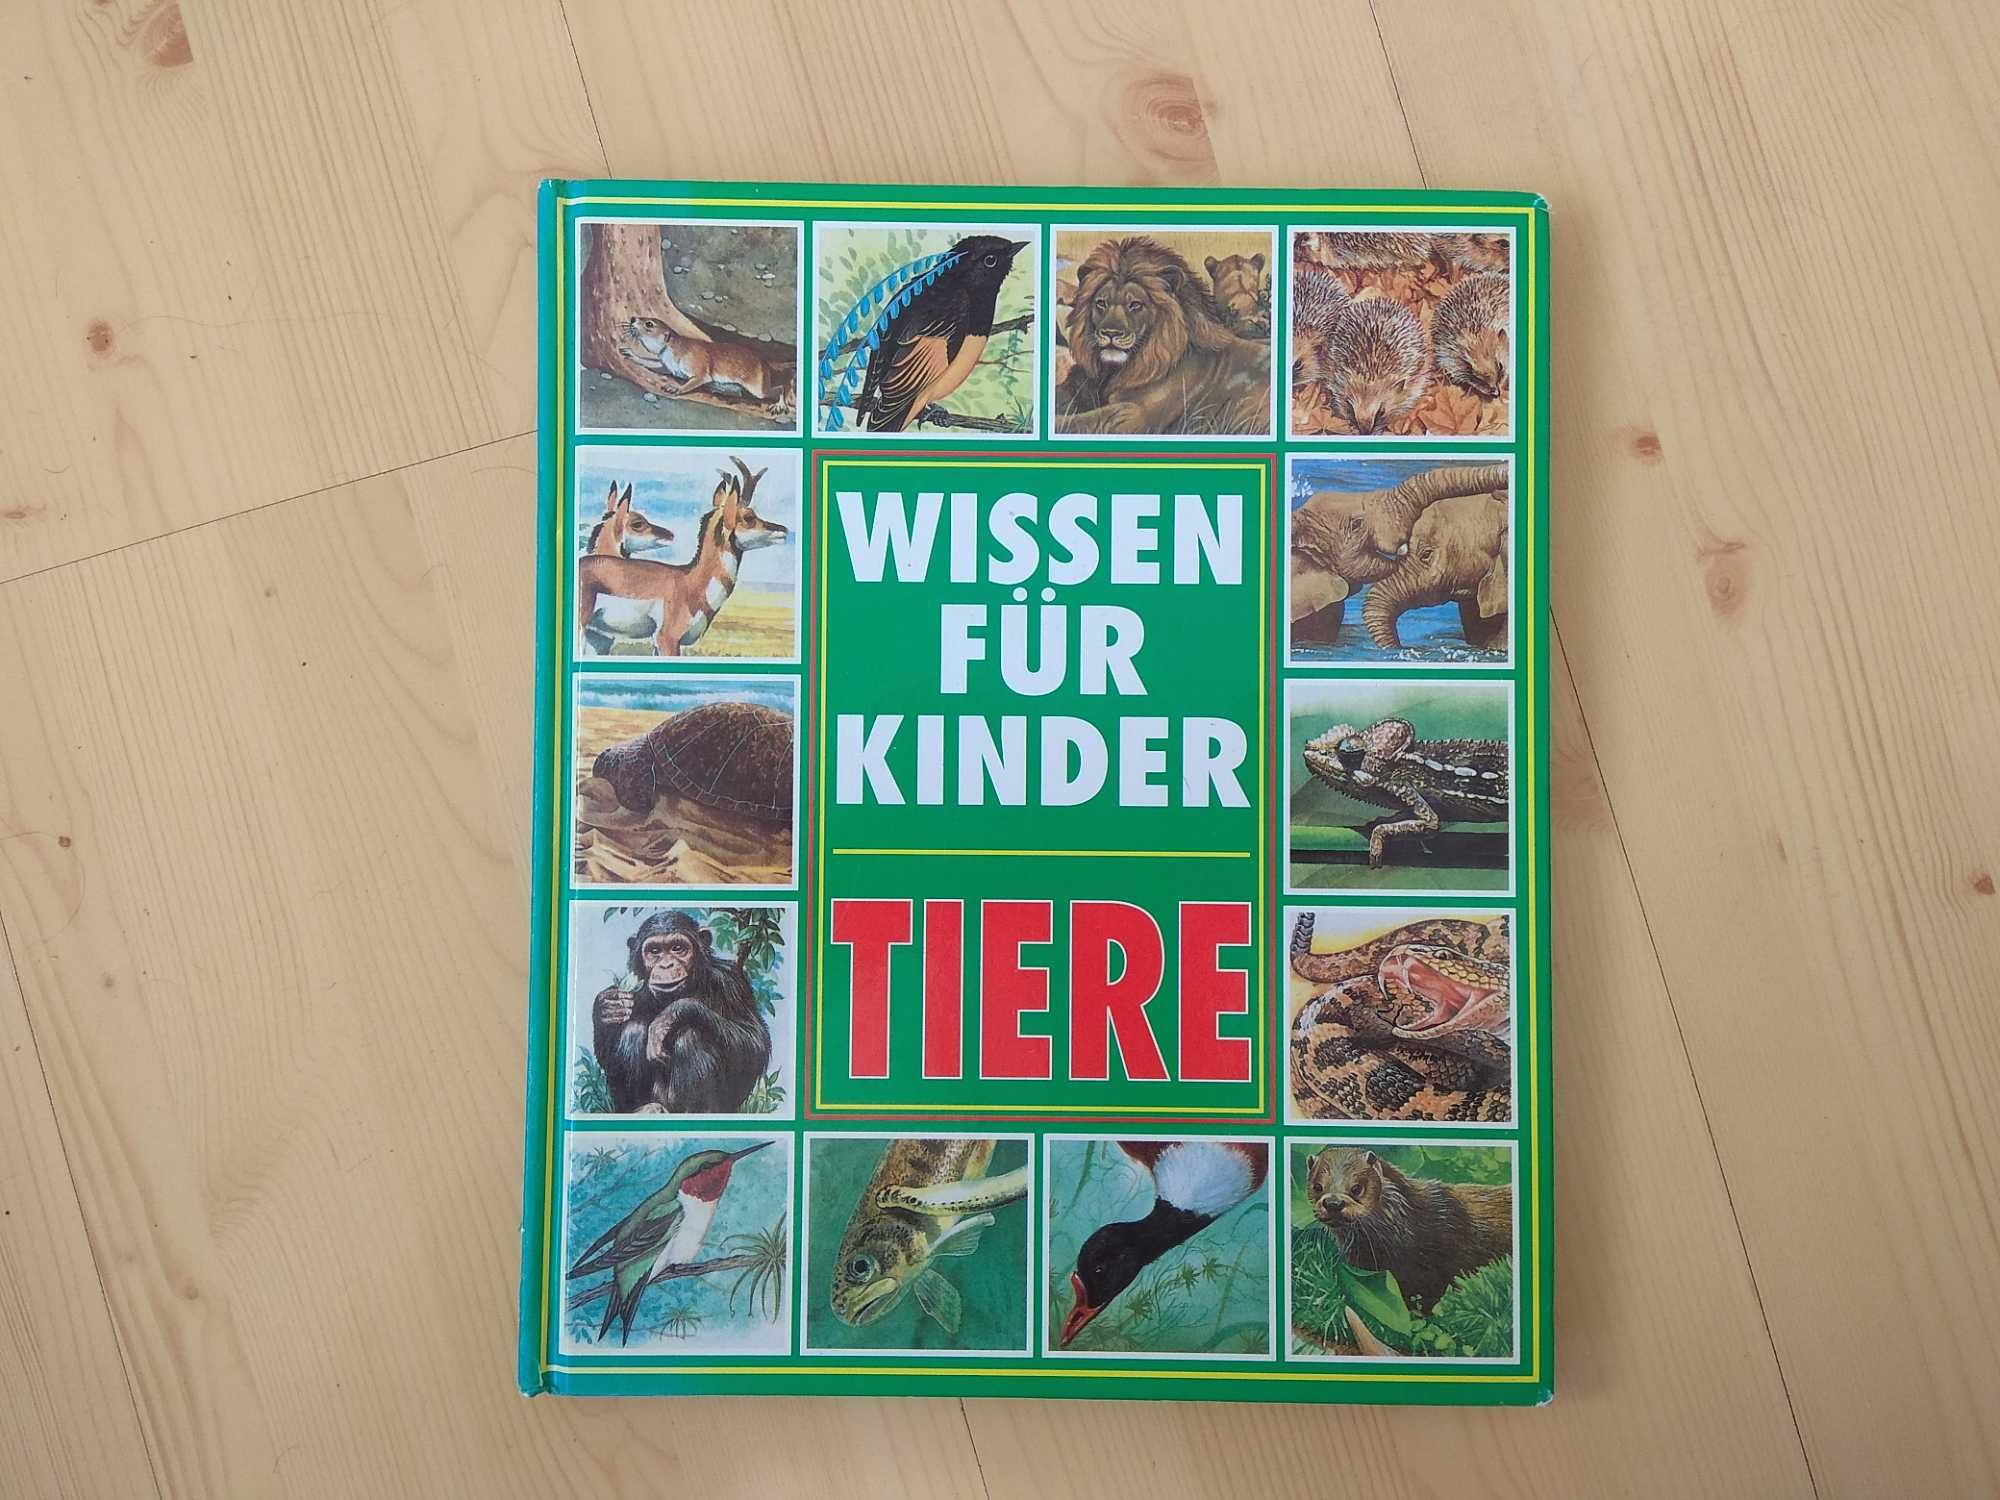 Książka po niemiecku dla dzieci, Wissen für Kinder-Tiere